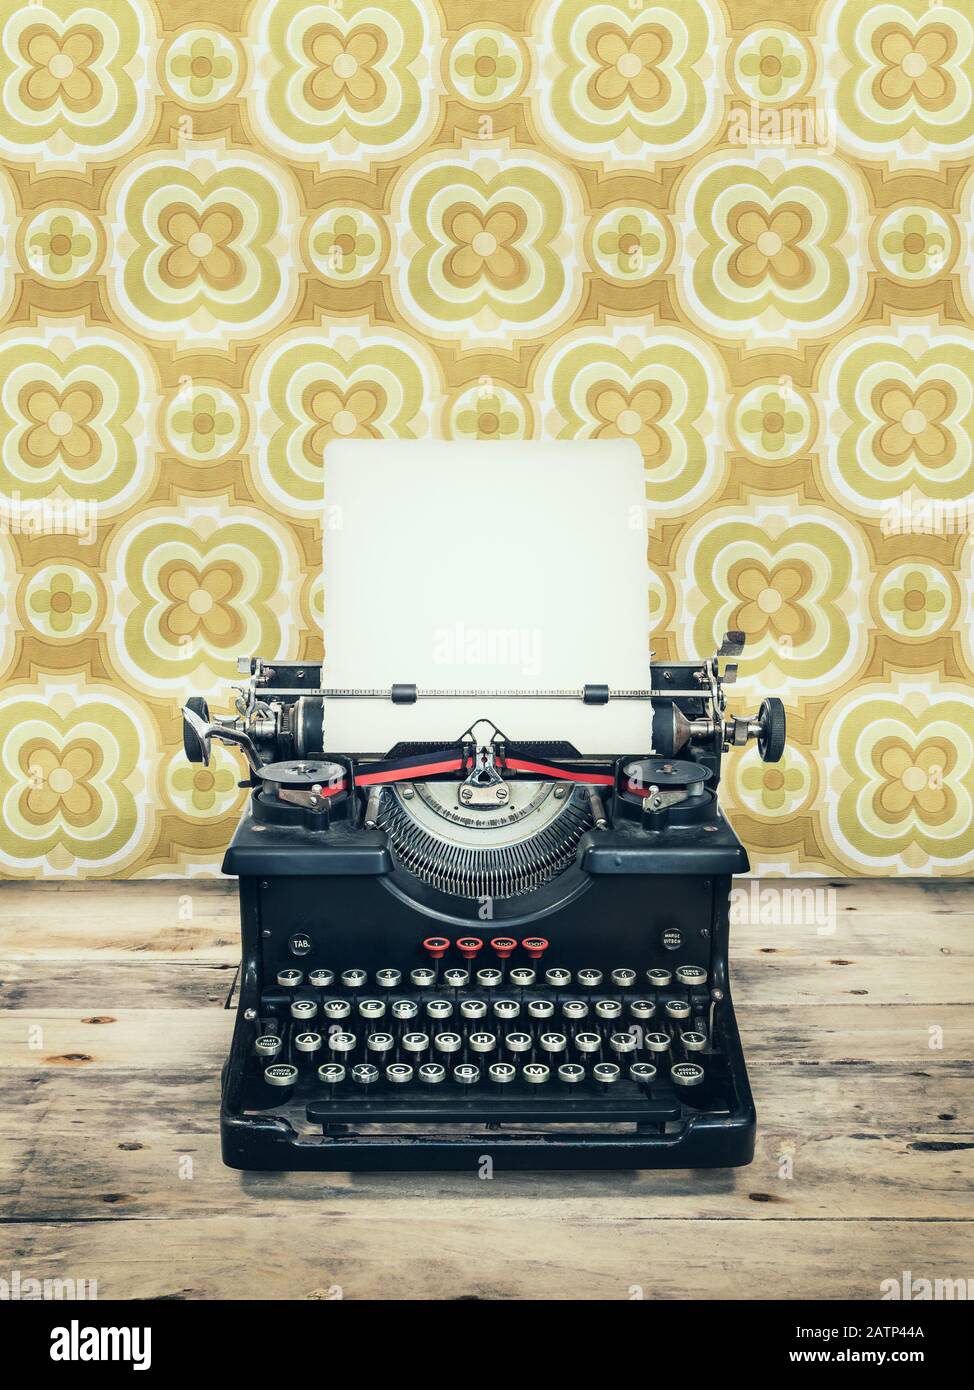 Image de style rétro d'une ancienne machine à écrire sur un parquet avec fond d'écran vintage derrière lui Banque D'Images